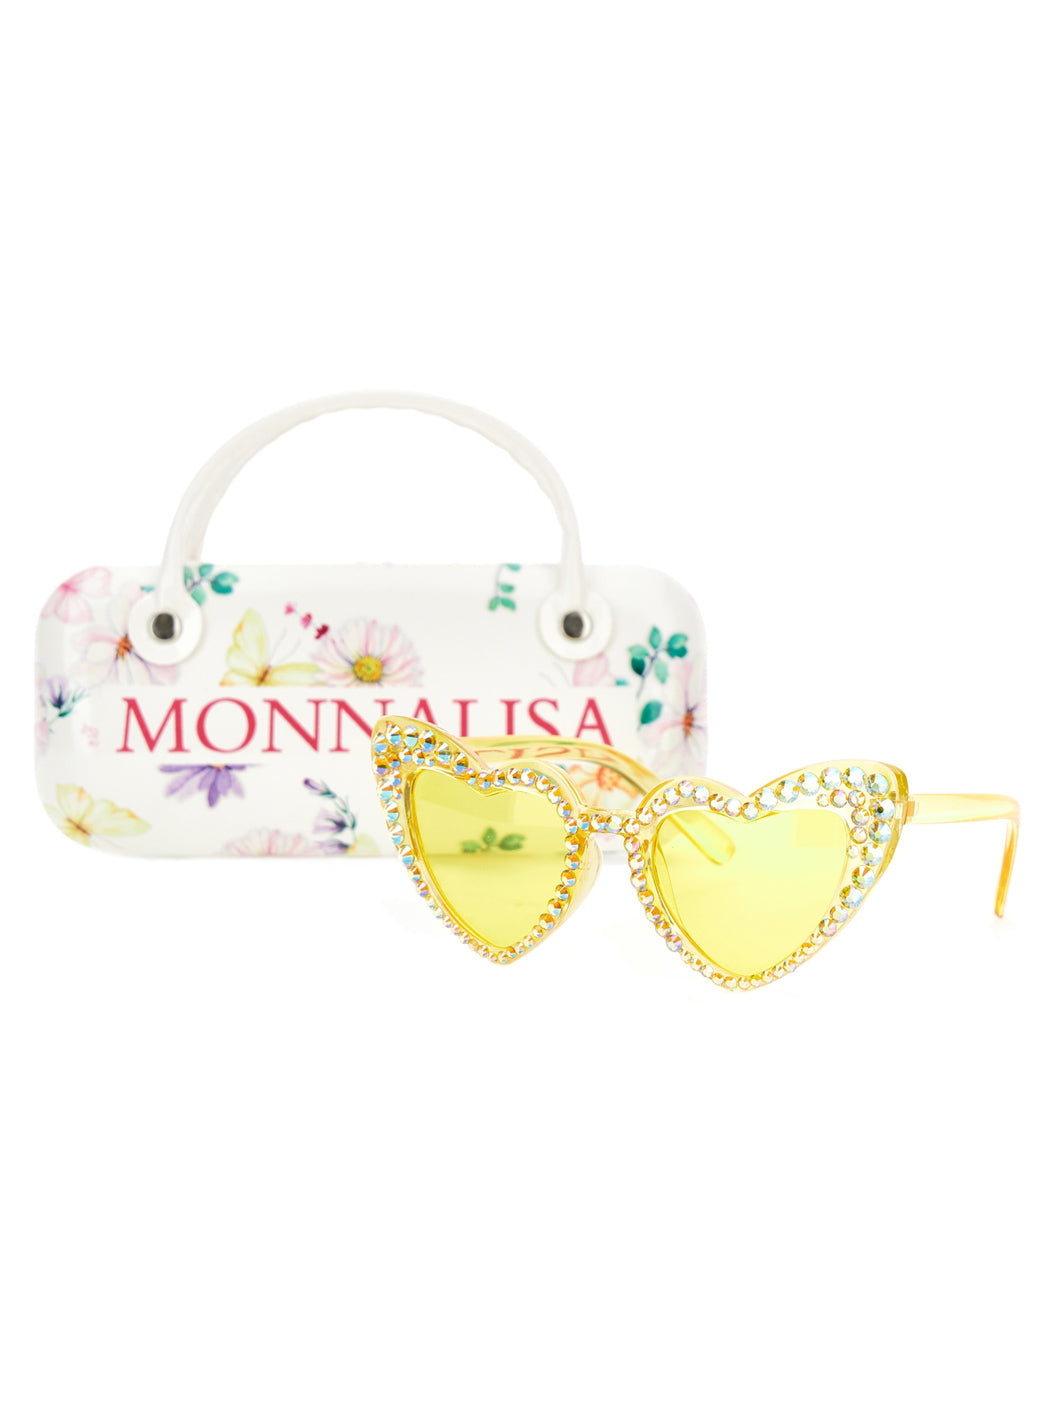 MONNALISA Heart-shaped sunglasses - Yellow 19A073